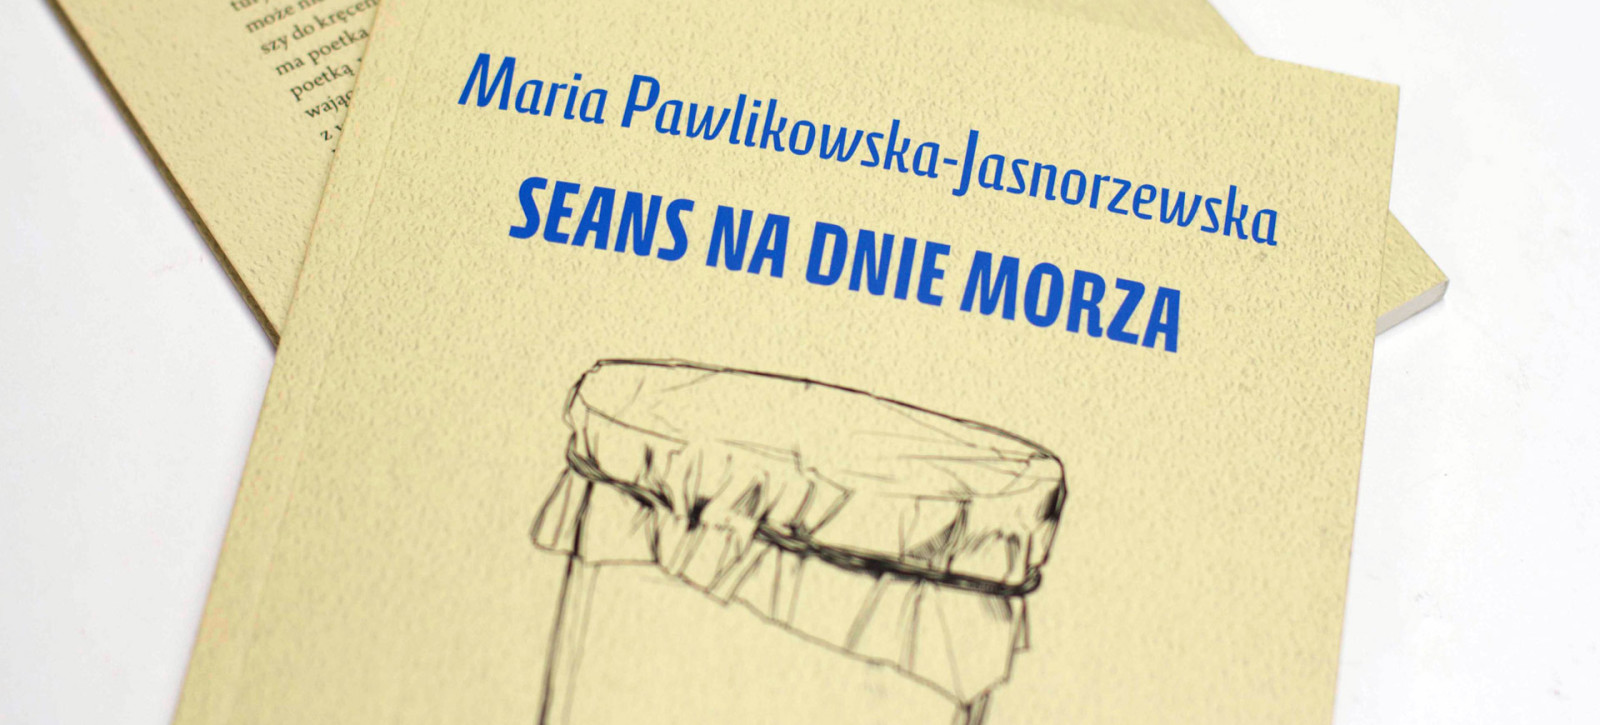 Maria Pawlikowska Jasnorzewska Nike Tekst Maria Pawlikowska Jasnorzewska Nike Tekst - Margaret Wiegel™. Jul 2023